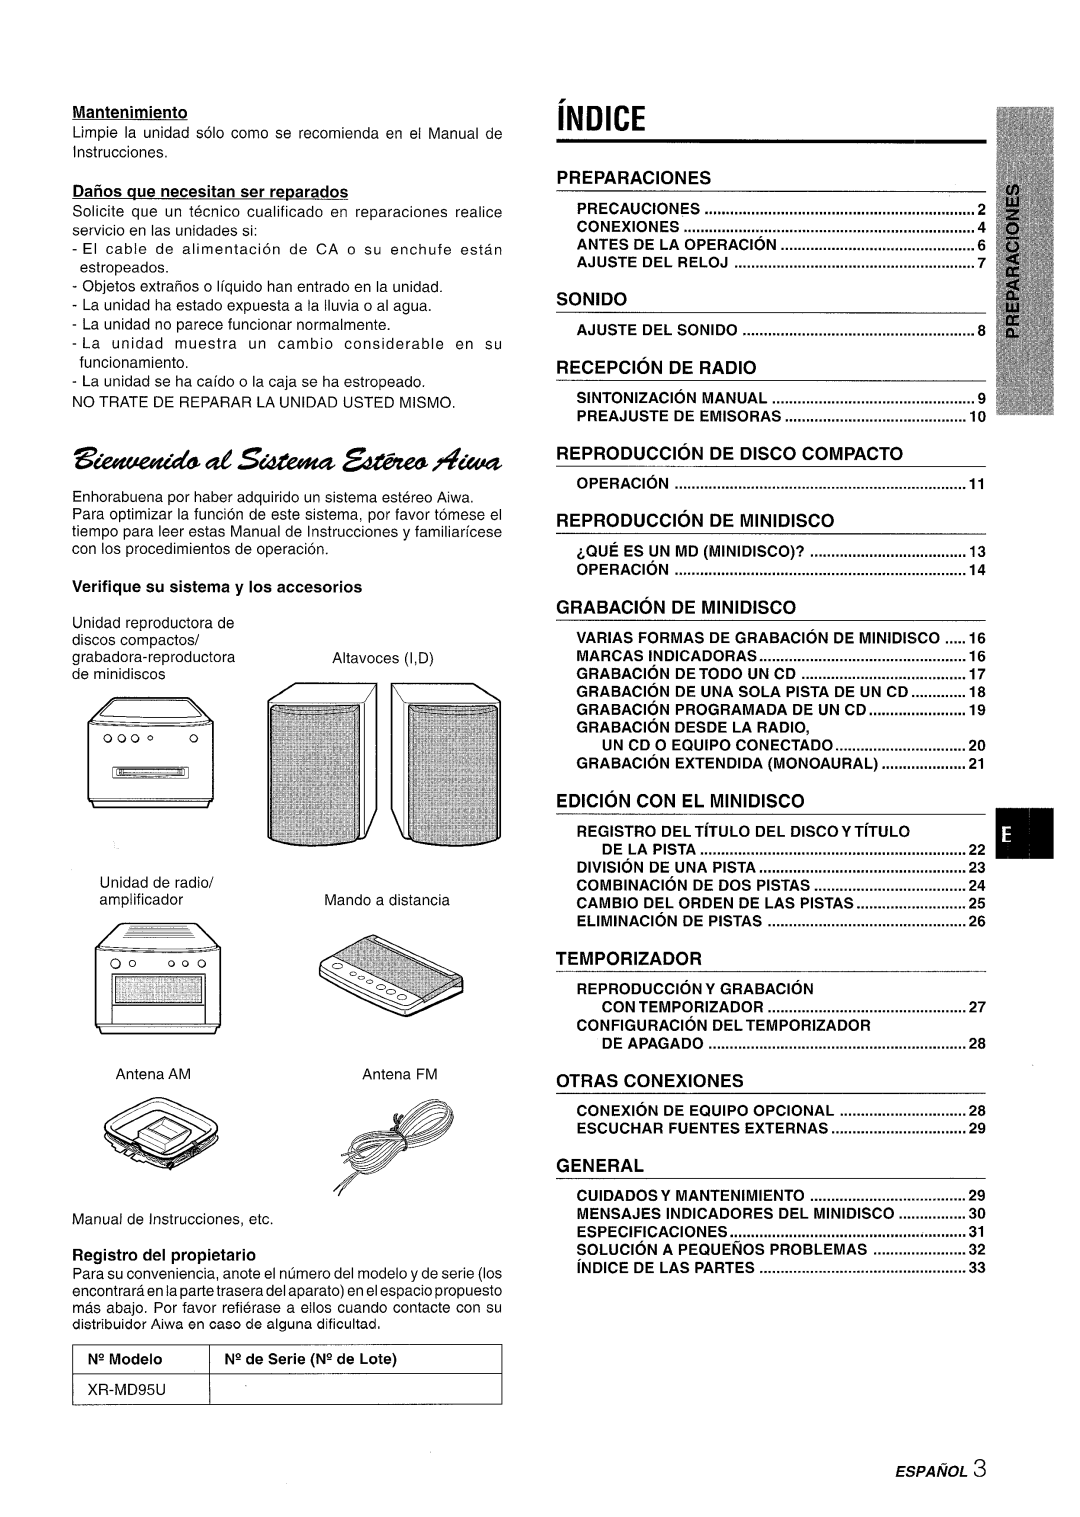 Aiwa XR-MD95 iNDICE, Preparaciones, Sonido, Recepcion, De Radio, Reproduction, De Disco Compacto, De Minidisco, Grabacion 